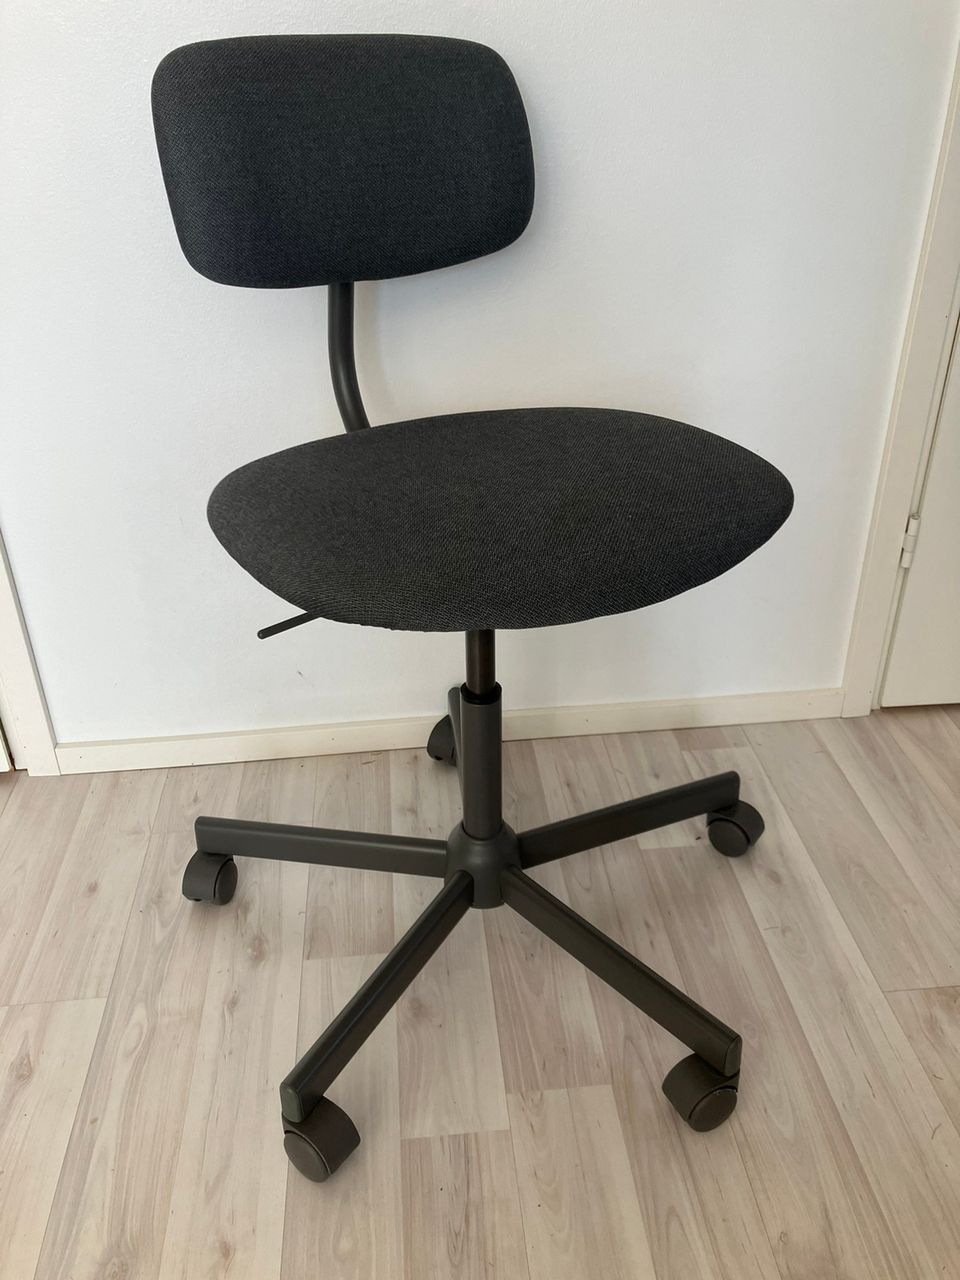 Bleckberget - työtuoli (Ikeasta ostettu)